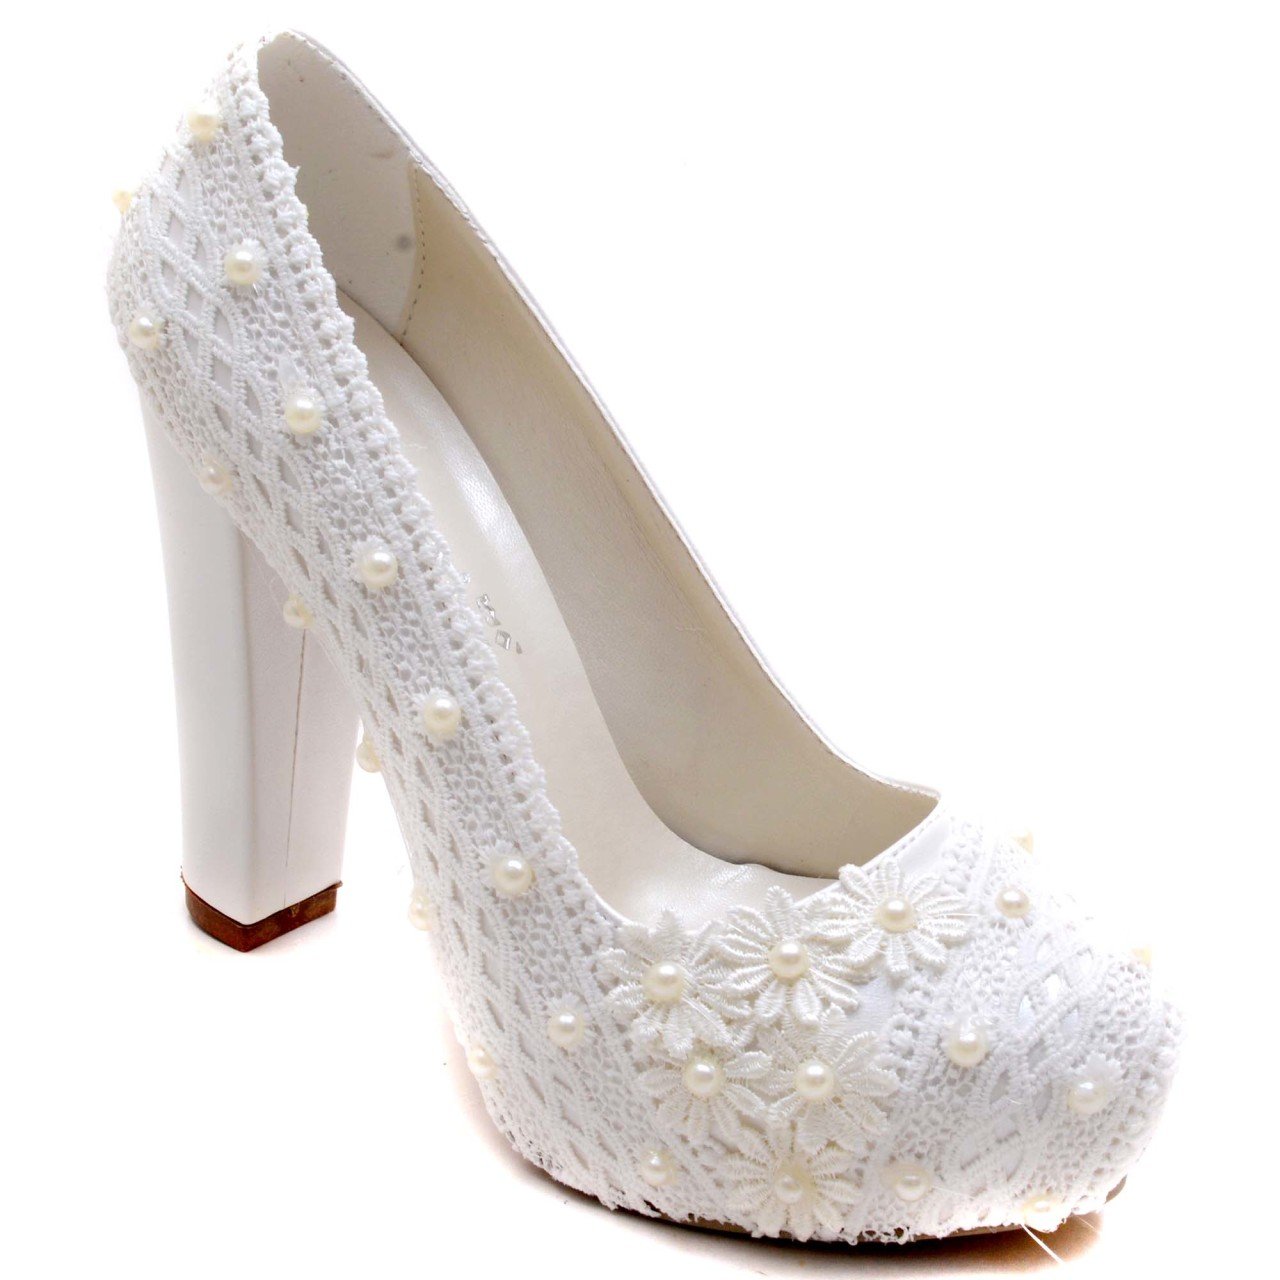 916-G Klasik Gelin Ayakkabısı - Beyaz